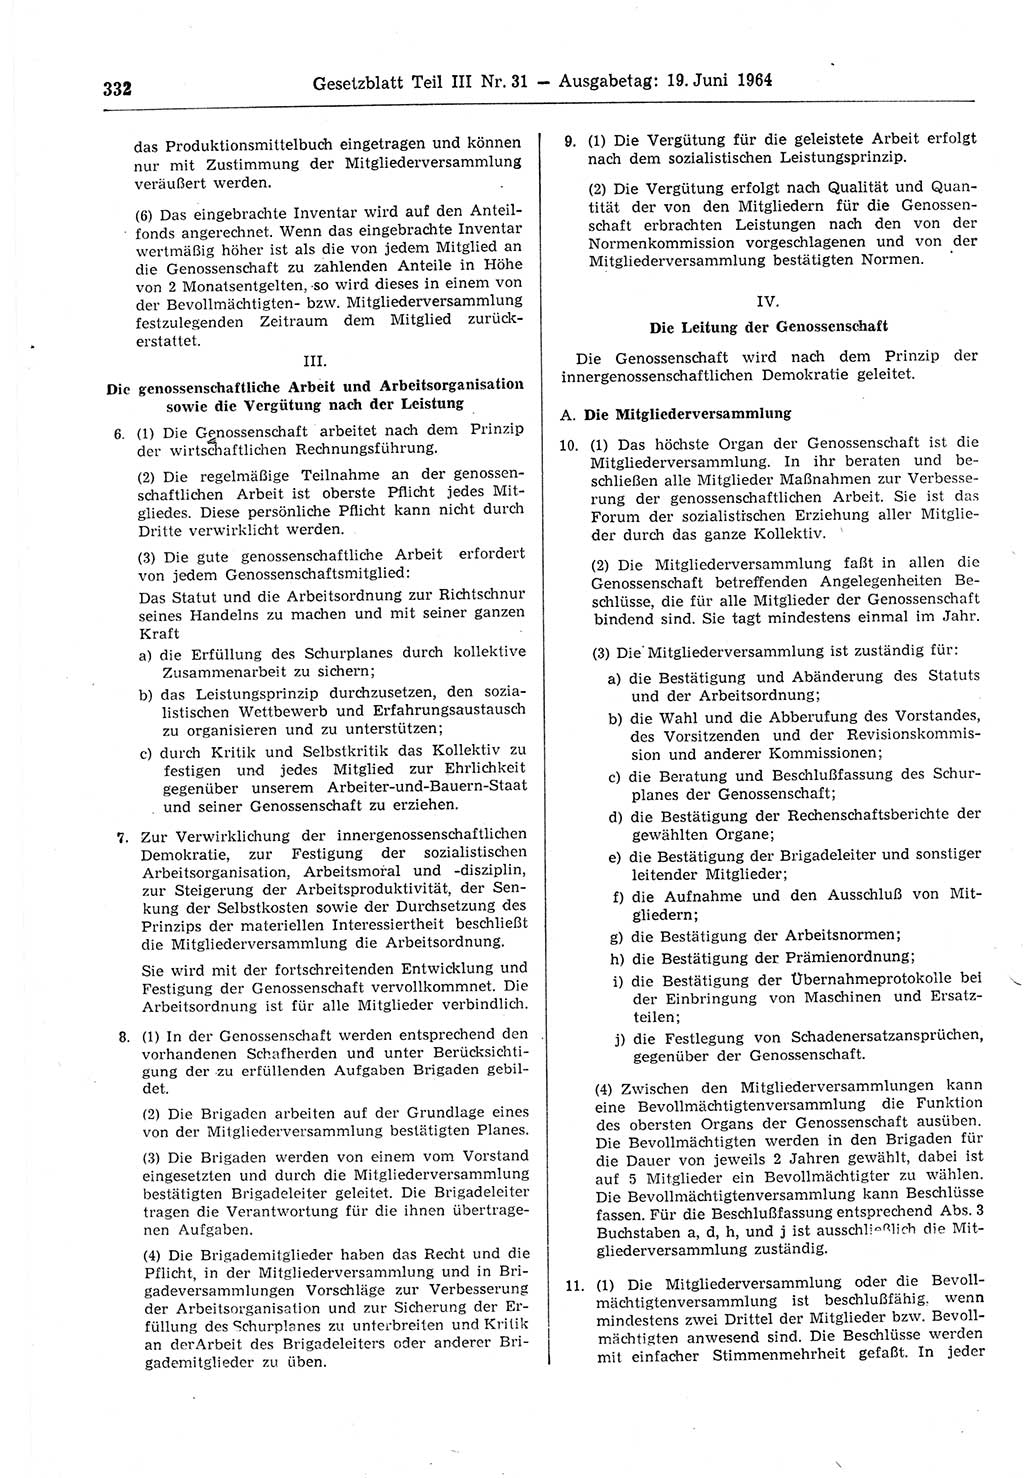 Gesetzblatt (GBl.) der Deutschen Demokratischen Republik (DDR) Teil ⅠⅠⅠ 1964, Seite 332 (GBl. DDR ⅠⅠⅠ 1964, S. 332)